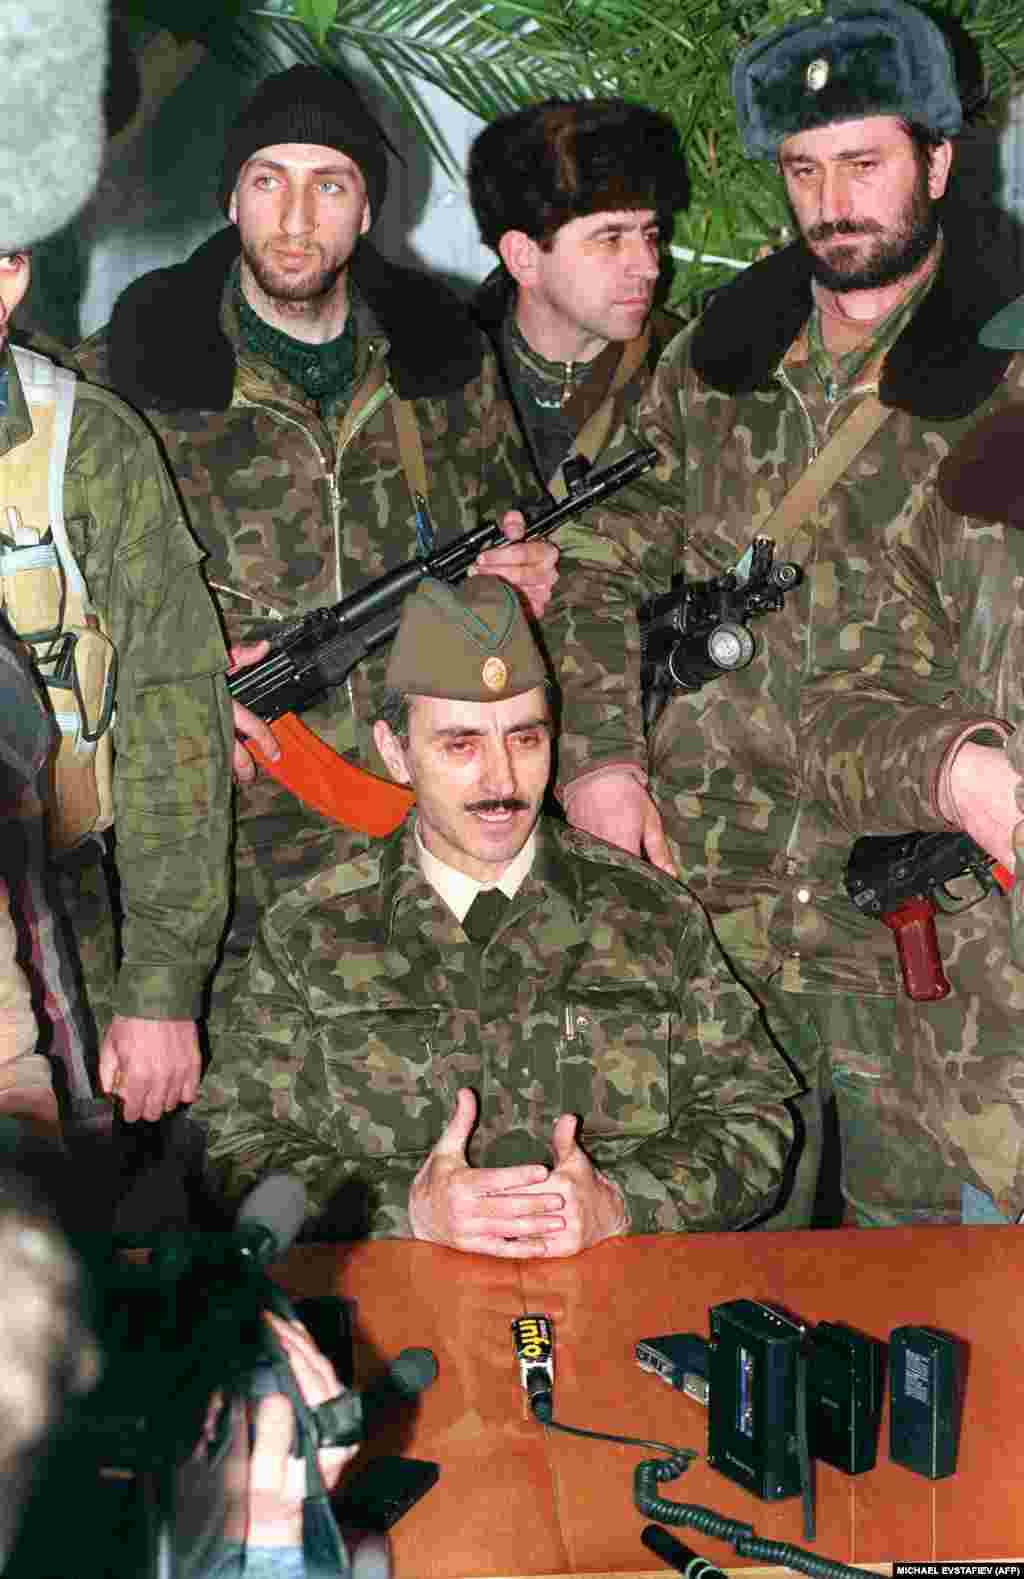 Президент самопровозглашенной Чеченской Республики Ичкерия Джохар Дудаев спешно проводит пресс-конференцию в одном из сел Чечни. Он потребовал прекратить убийства мирных граждан и начать немедленные переговоры между Москвой и Грозным.&nbsp;11 января 1995 года.&nbsp;